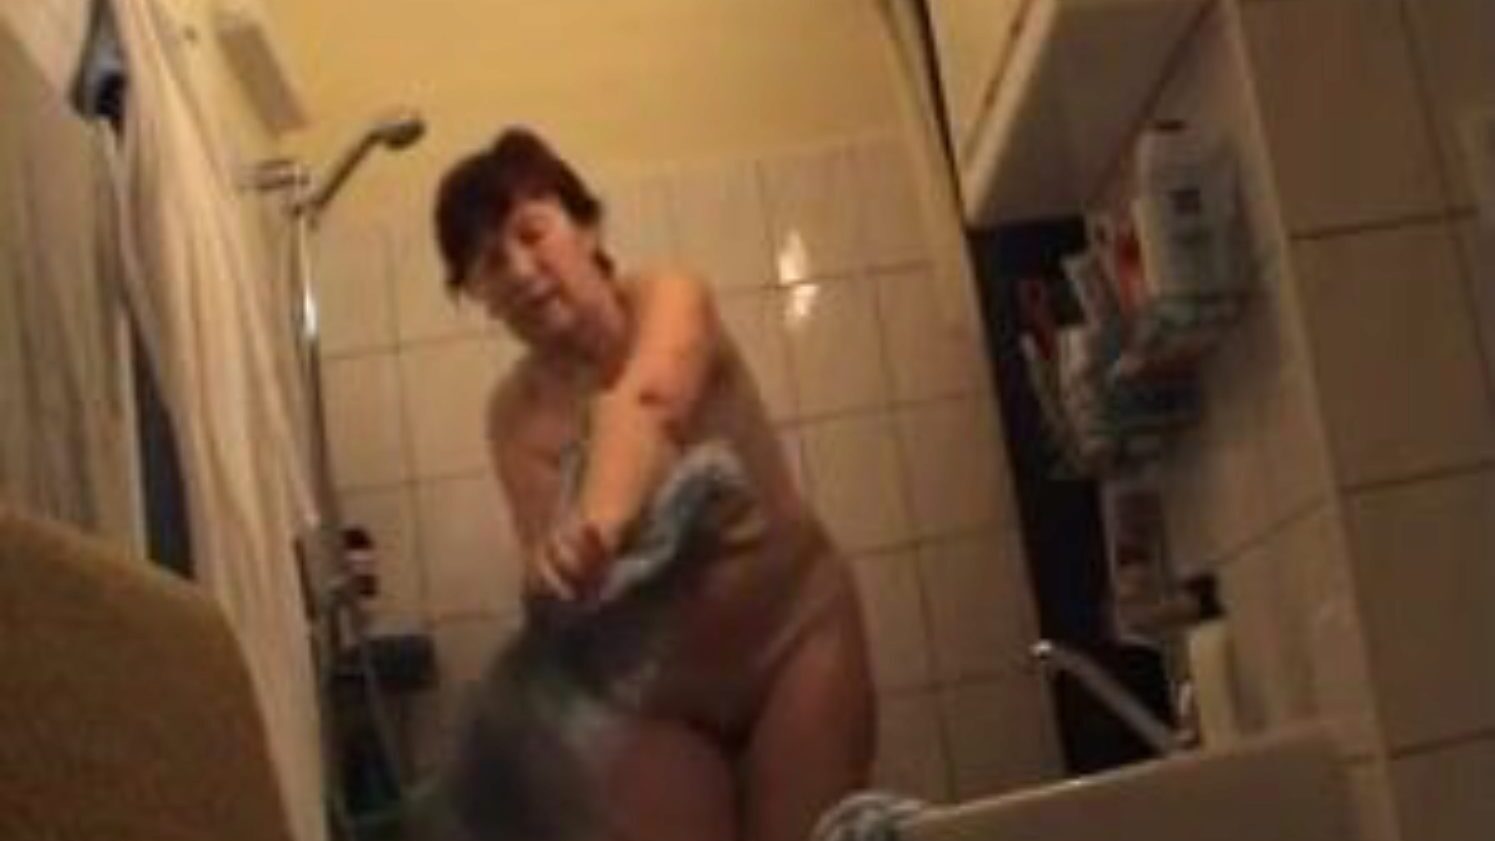 nonna tedesca nuda in bagno, annuncio video porno tedesco gratuito guarda la scena del film nonna tedesca nuda in bagno su xhamster, il più grande sito di tube di sesso con tonnellate di nonne nude tedesche gratuite e video porno maturi